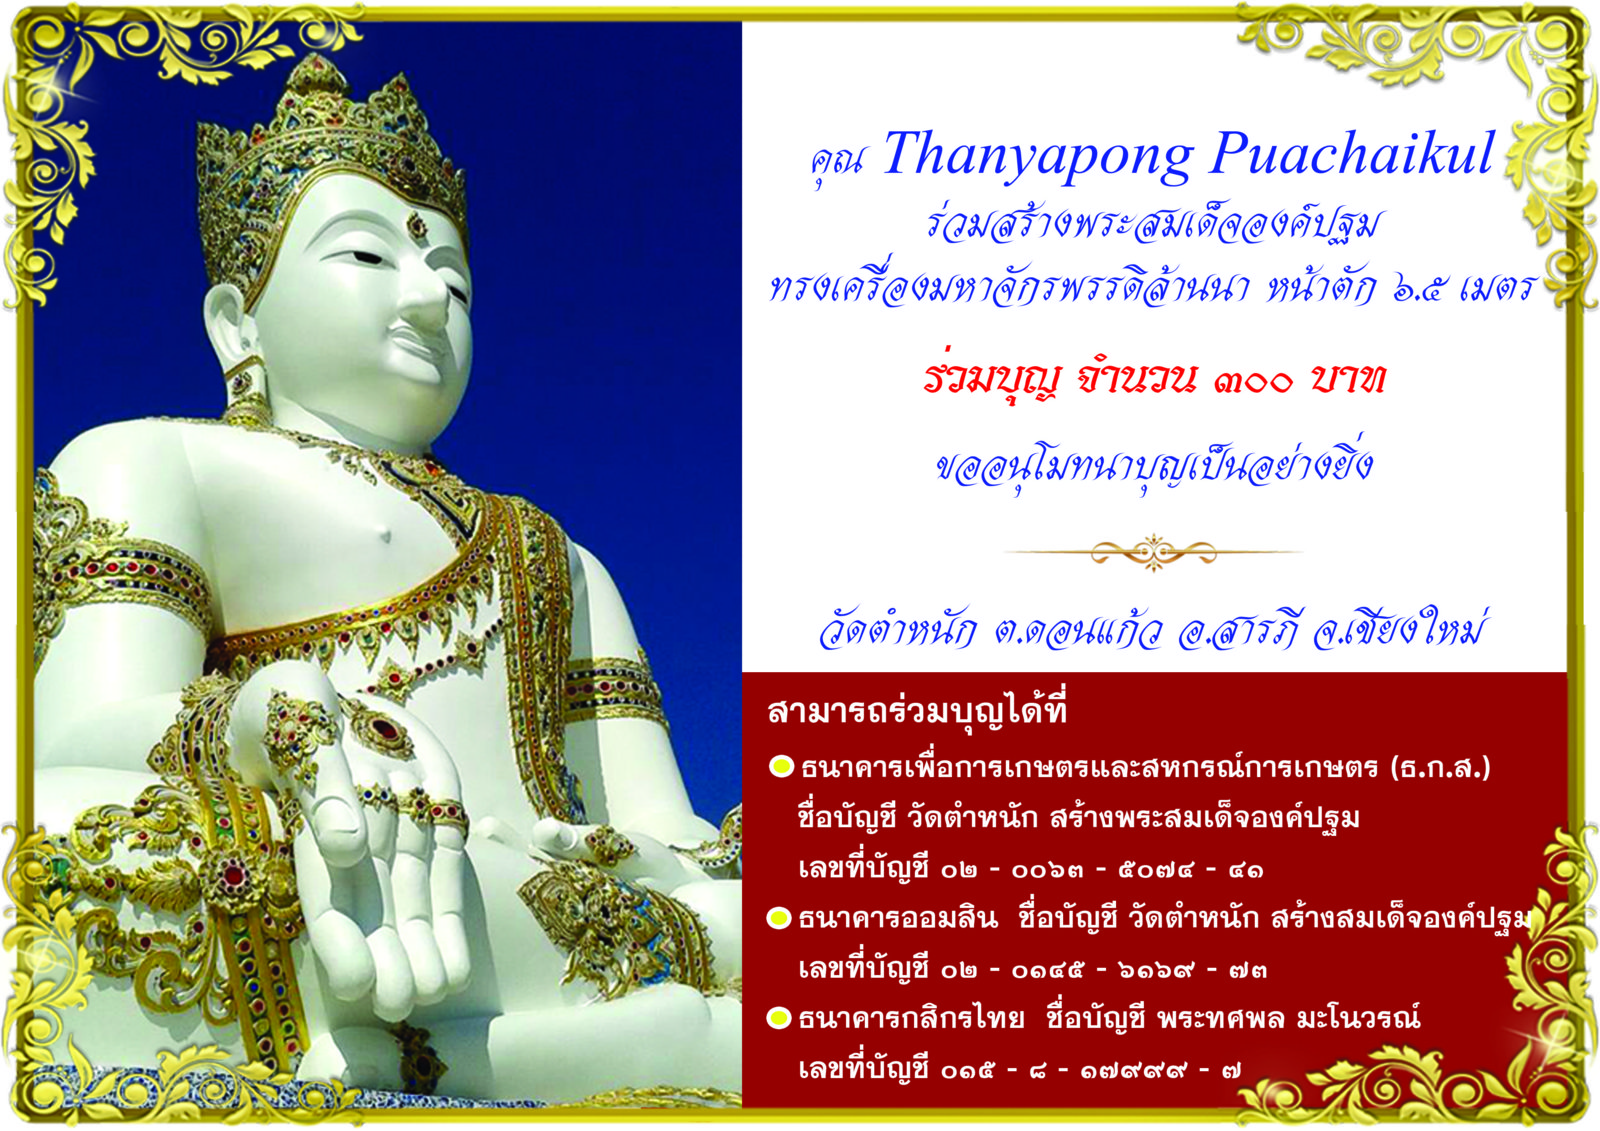 คณ Thanyapong Puachaikul 300.jpg